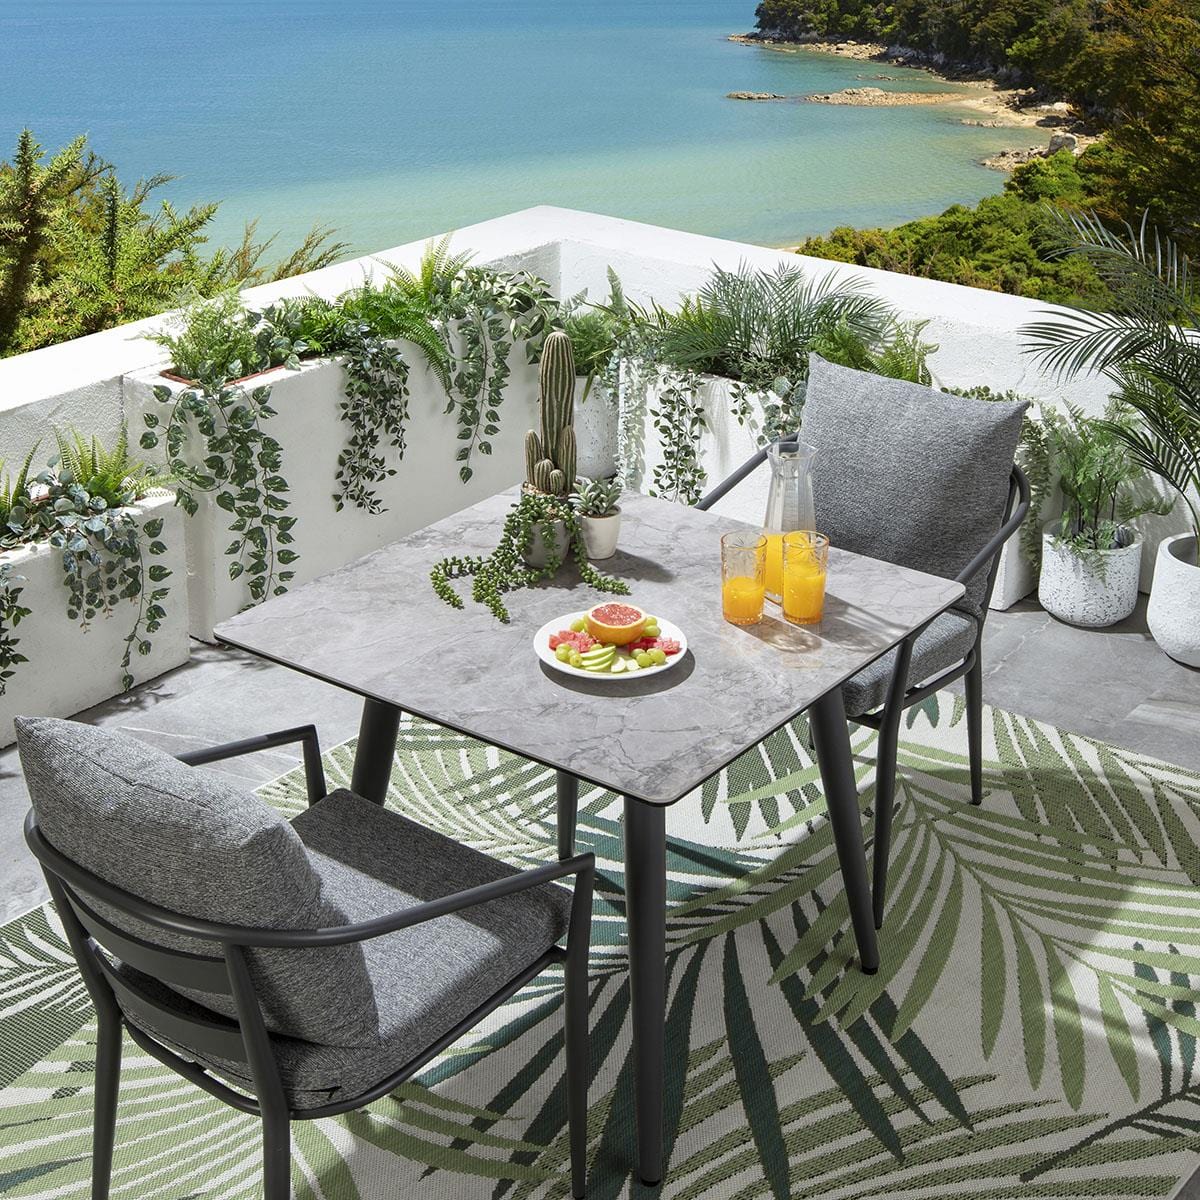 Quatropi Mia 2 Seater Square Ceramic Outdoor Garden Dining Set Aluminium Grey